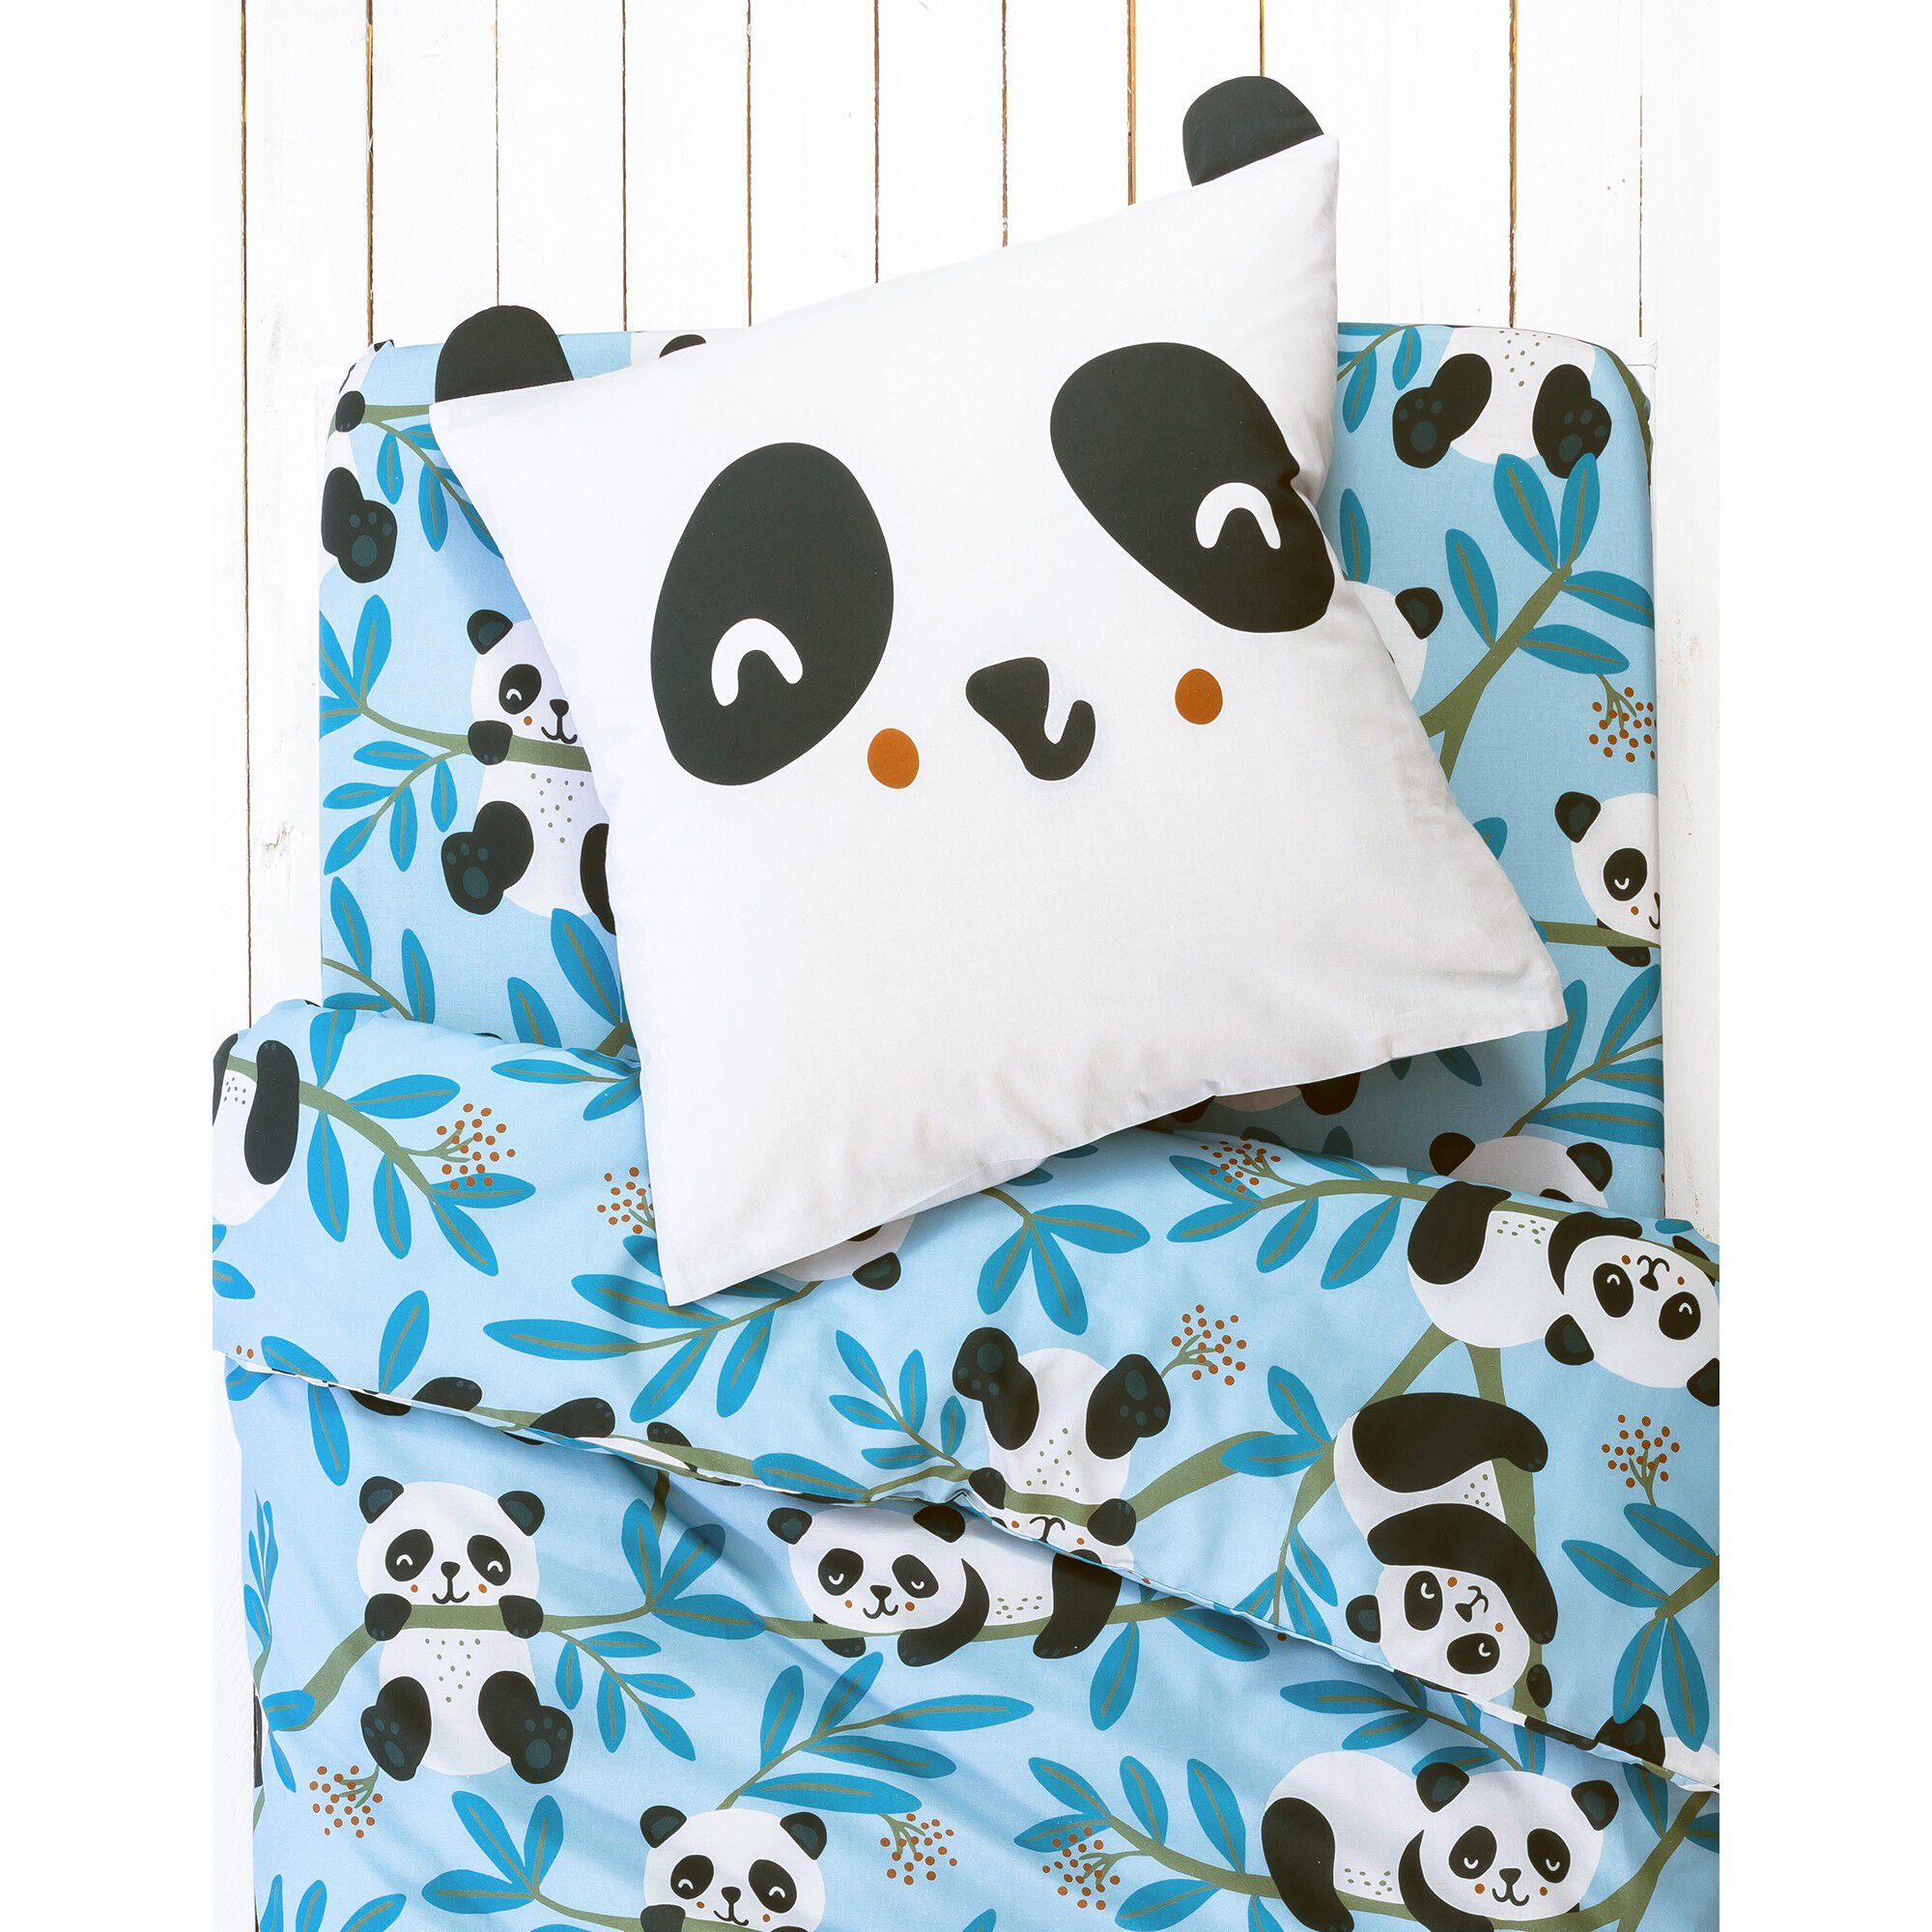  Plaid  Color1 Yisumei   personnalisé Panda géant 80 x 120 cm Coton mélangé couvre-lit pour lit ou canapé 